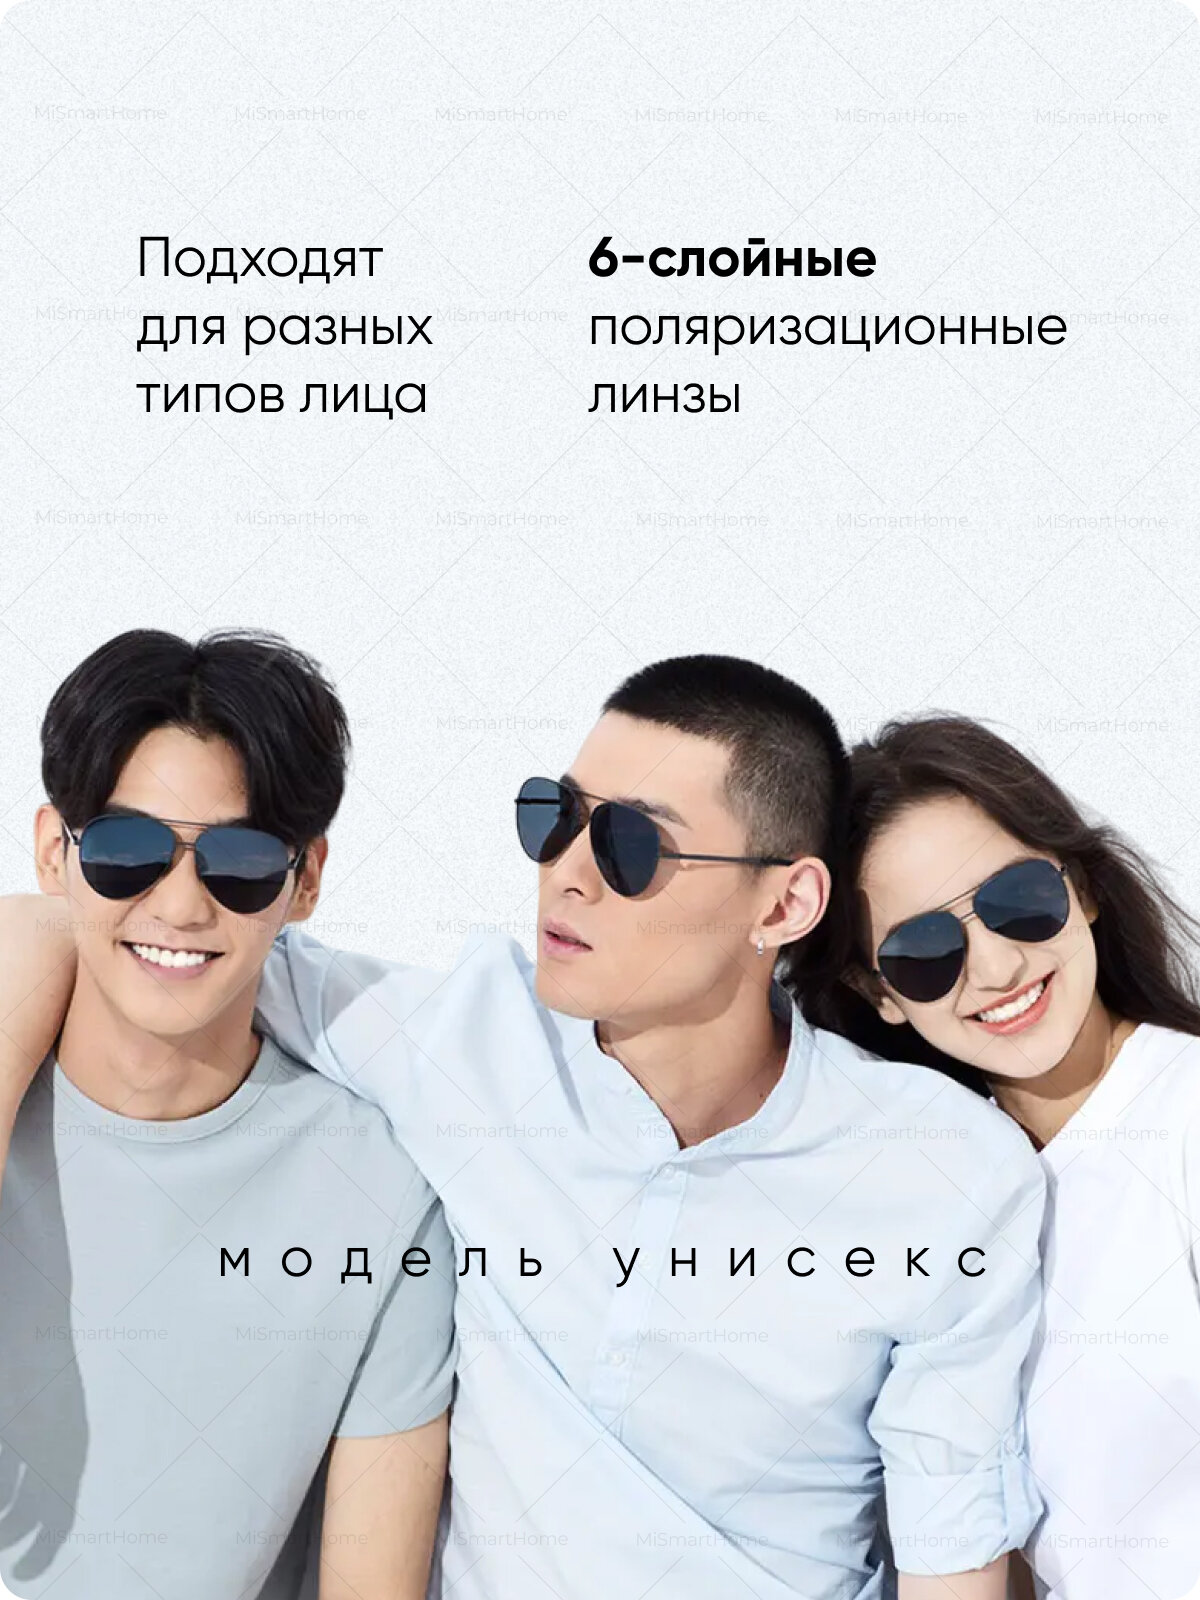 Солнцезащитные очки Xiaomi  Turok Steinhardt Sunglasses